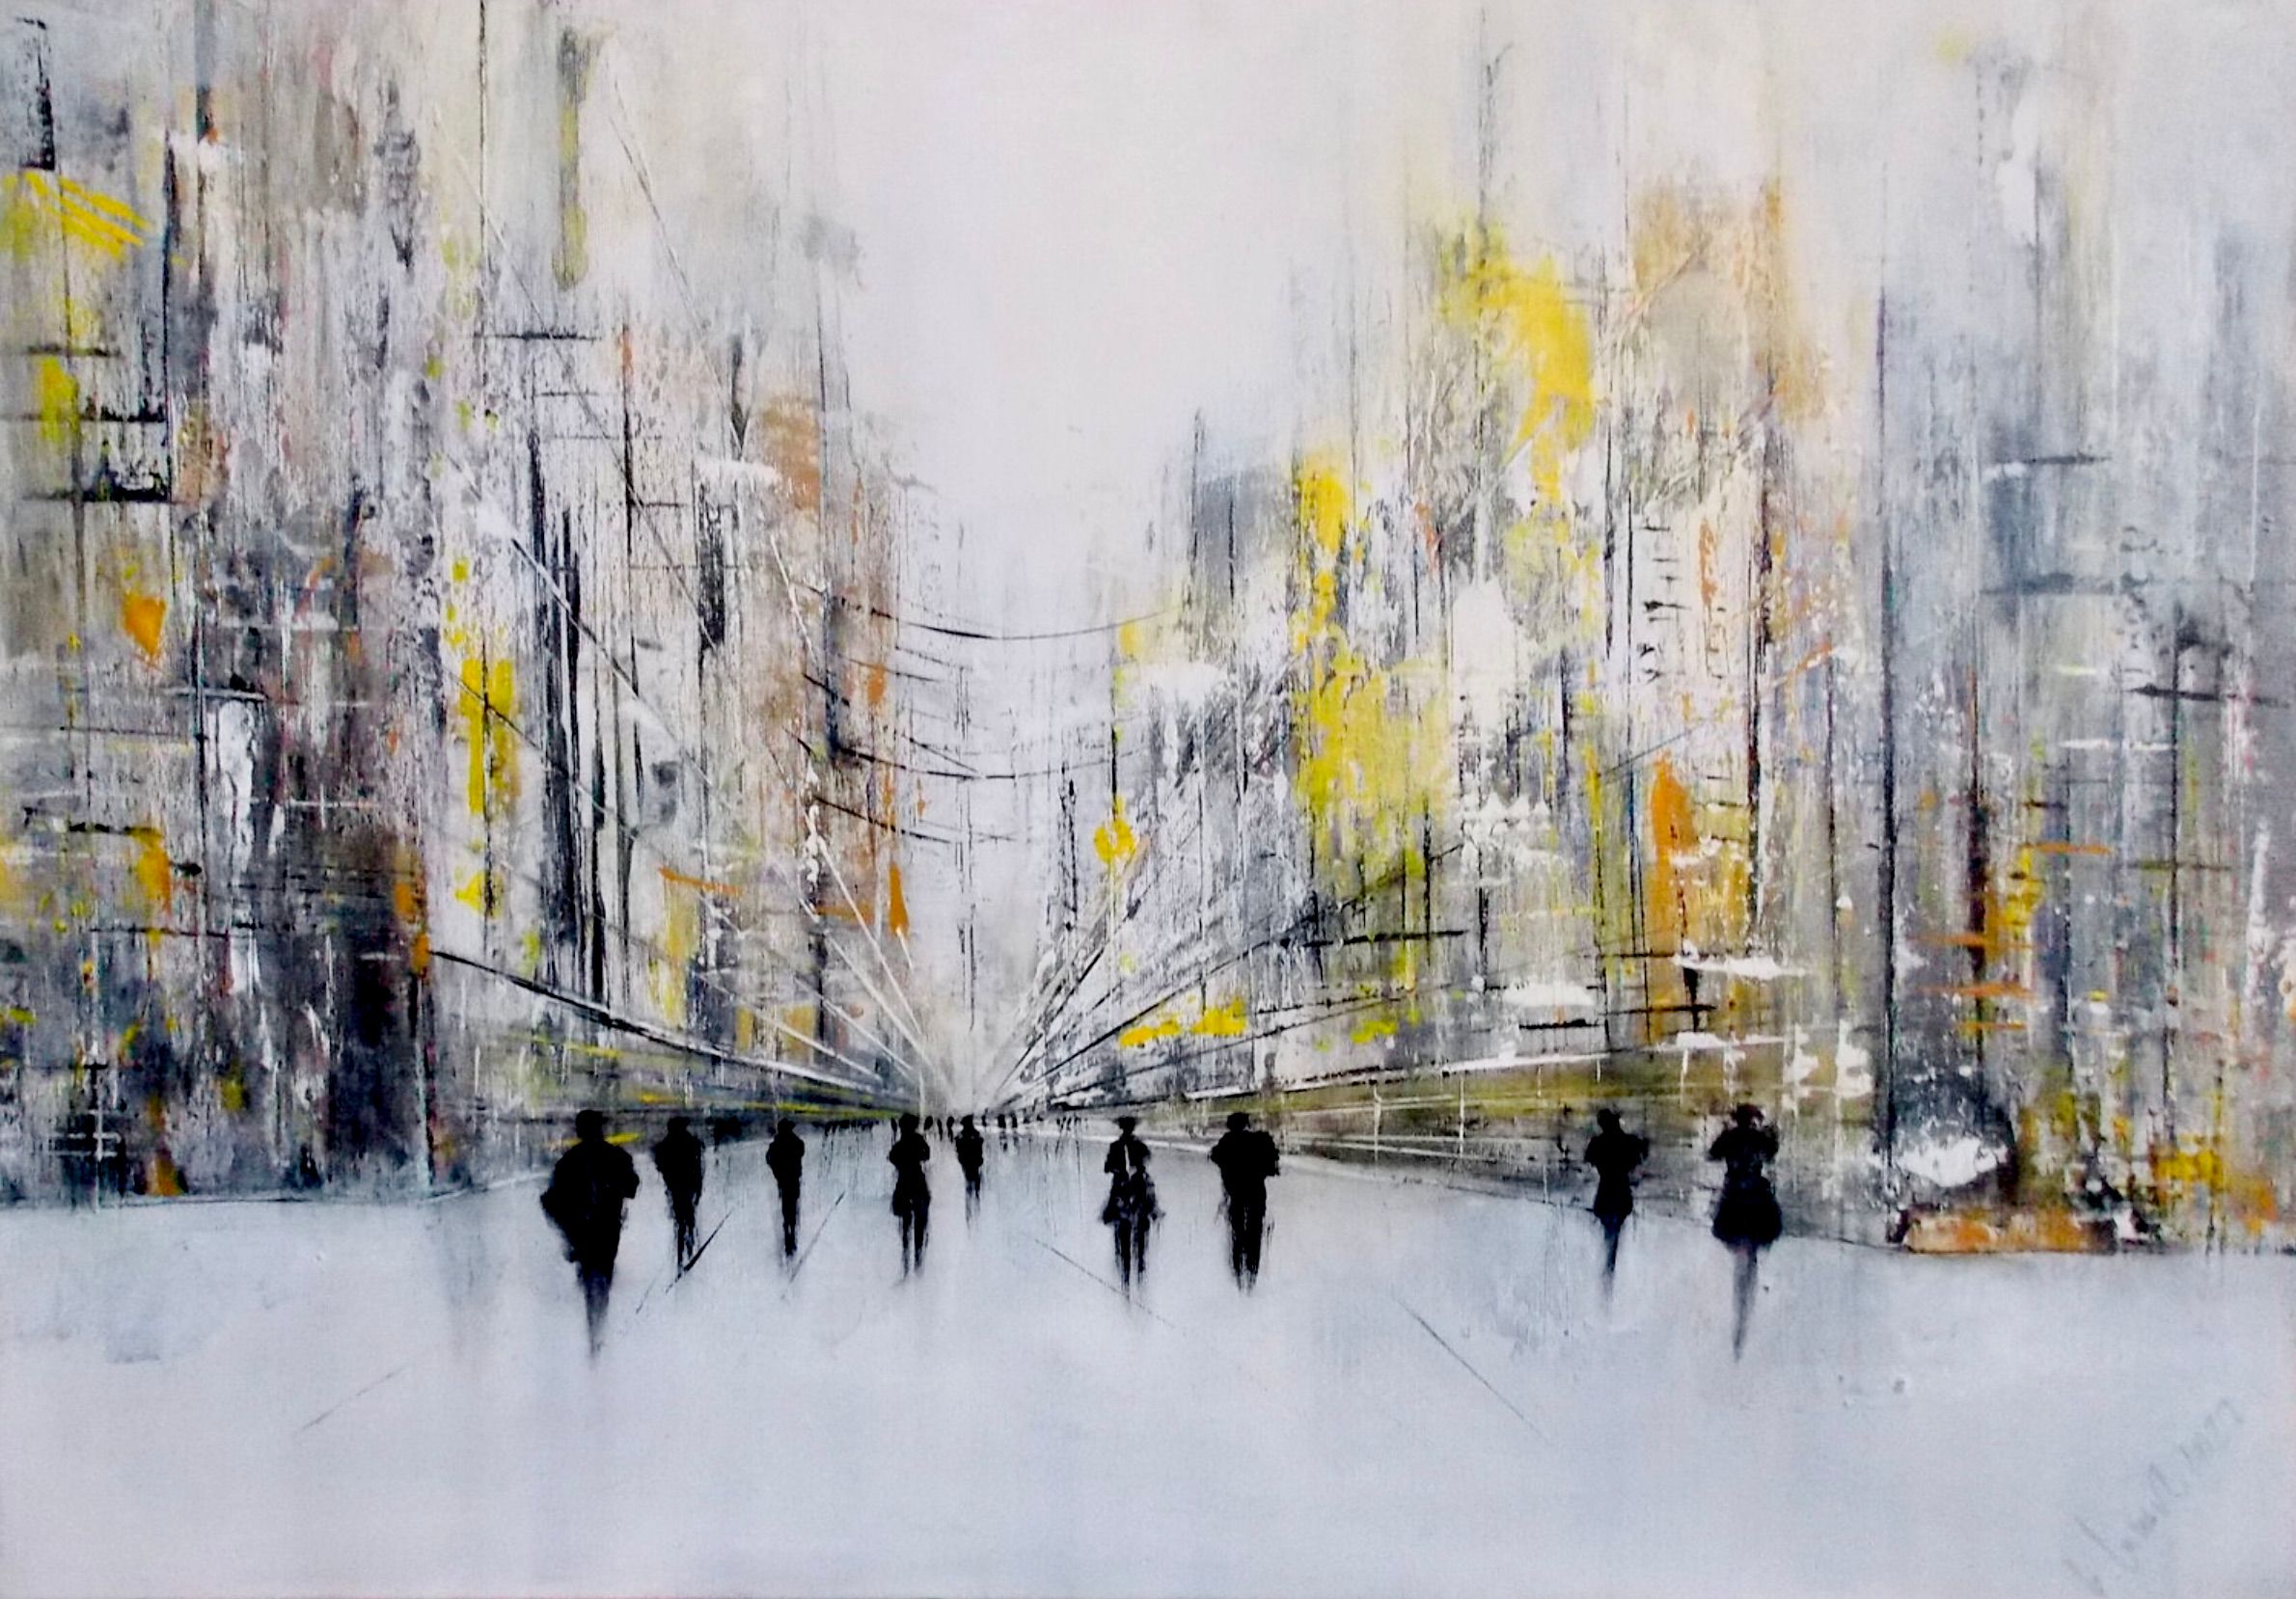 Cityscape 4" de Christa Haack Este cuadro abstracto metropolitano muestra siluetas de personas frente a un ambiente urbano. Es casi un cuadro en blanco y negro con los colores adicionales amarillo y naranja.